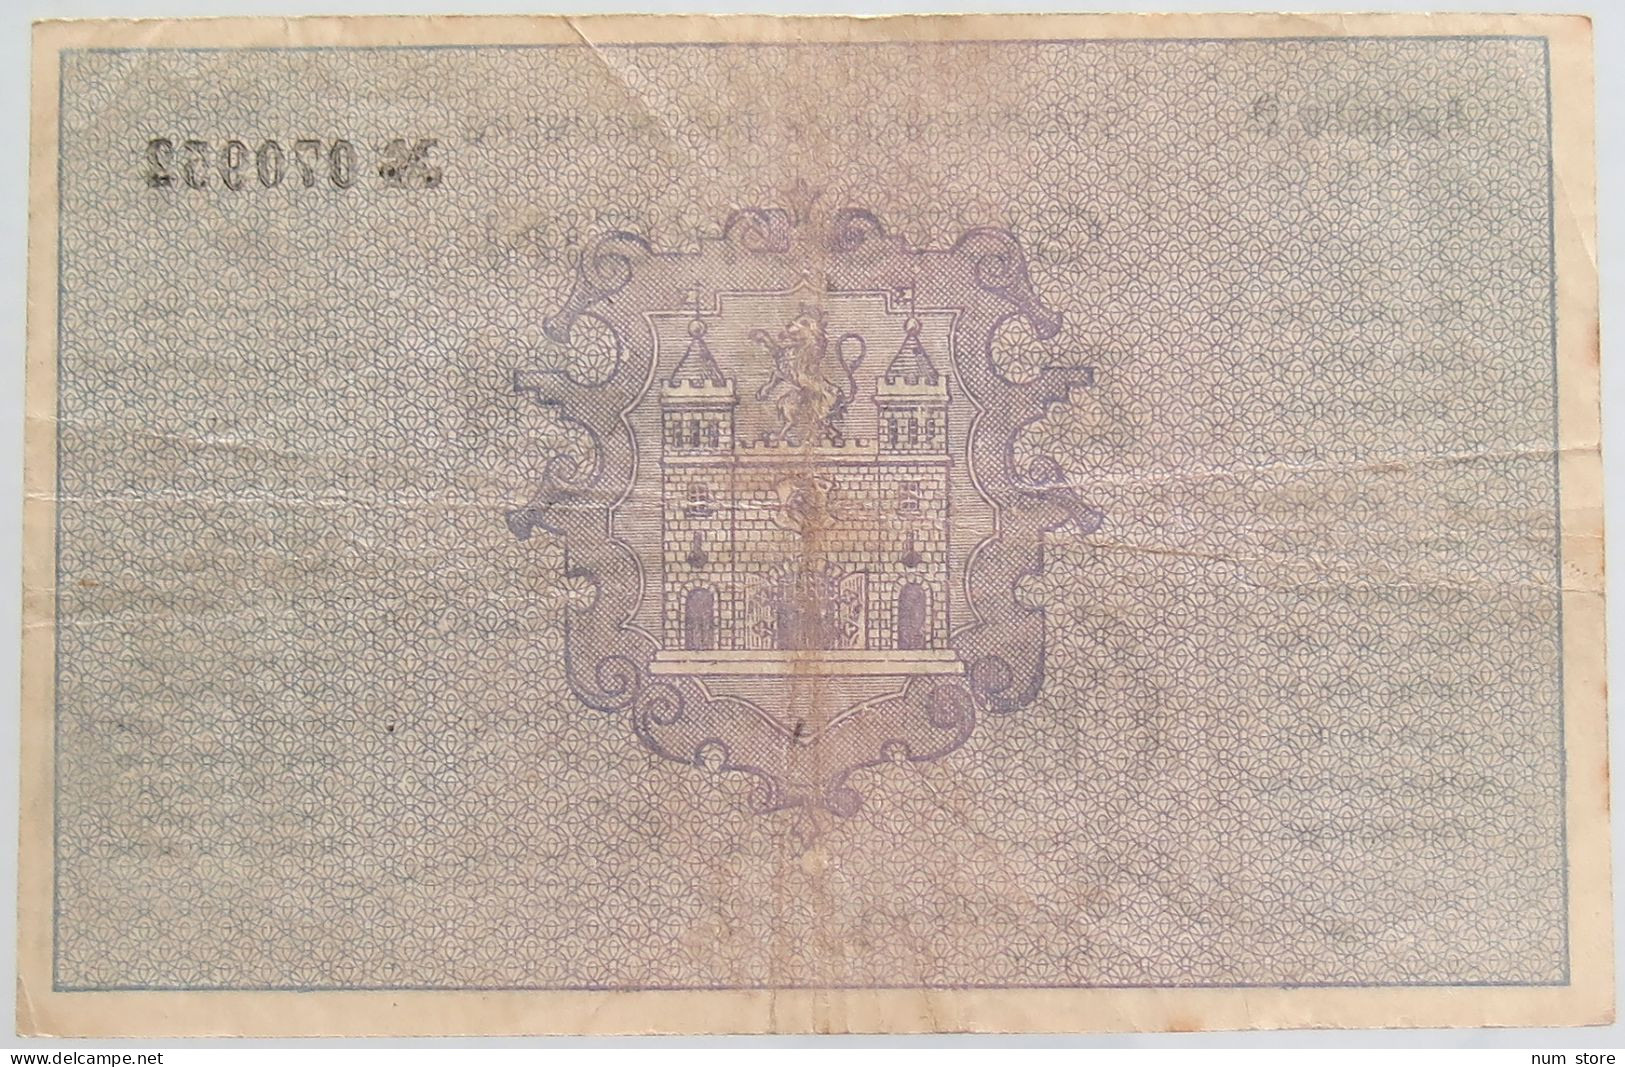 AUSTRIA 10 KRONEN REICHENBERG 1919 #alb010 0369 - Oesterreich